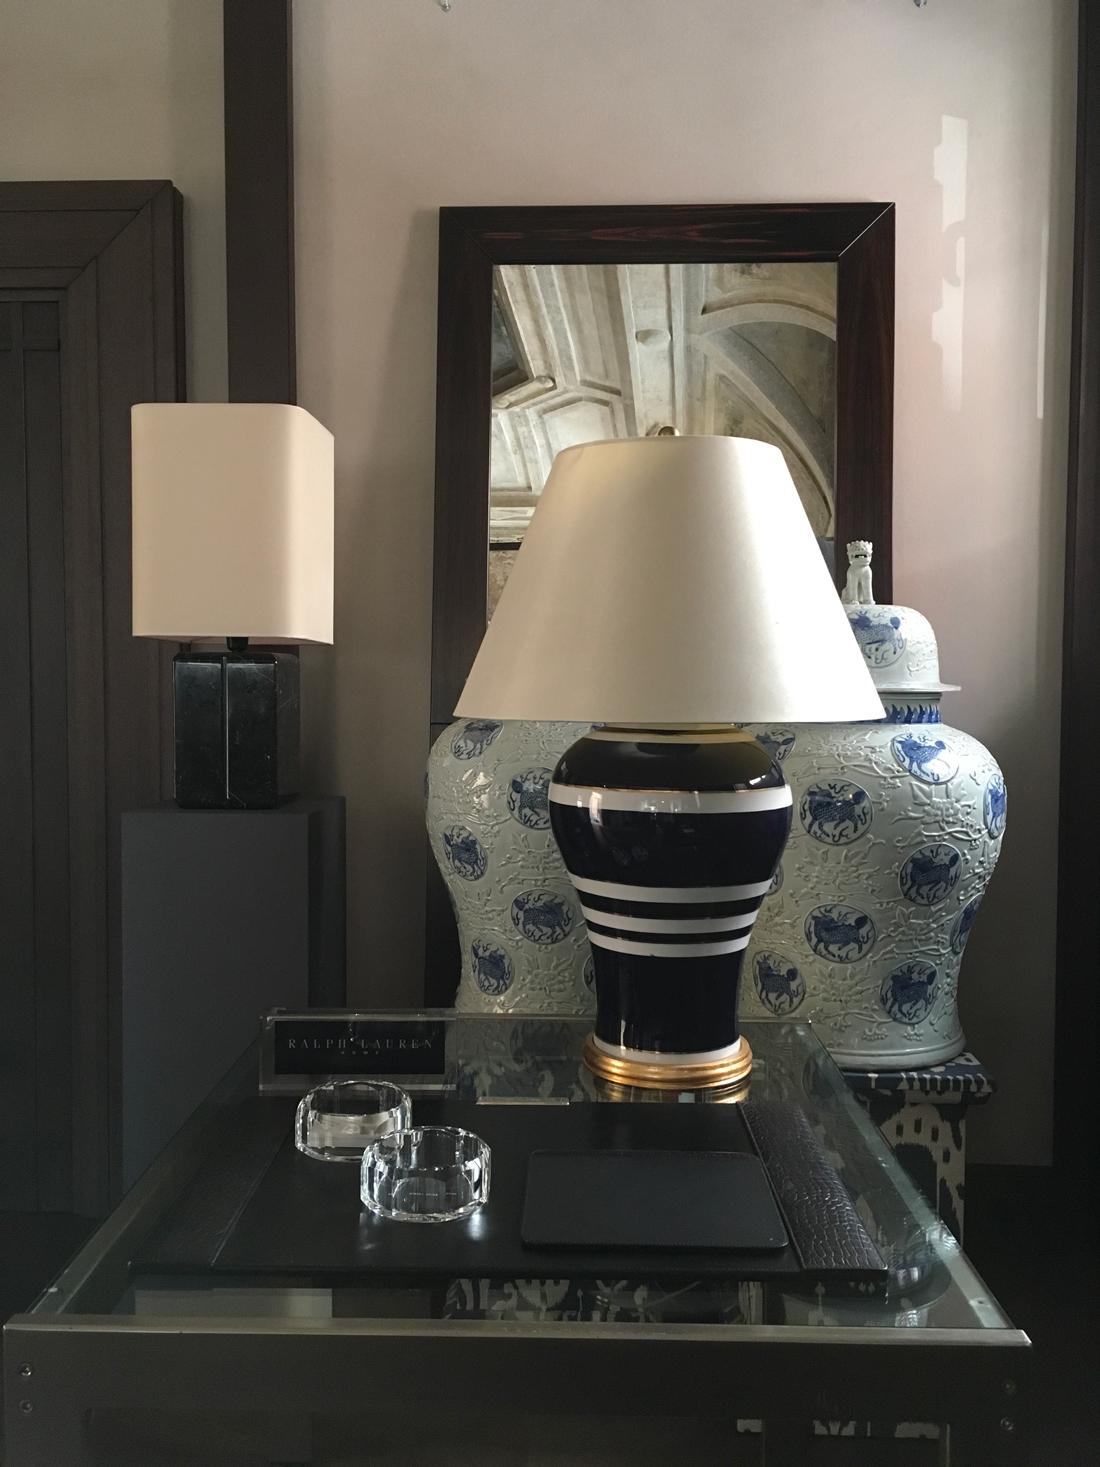 Dies ist eine klassische Ingwerglas-Silhouette mit gestreiften glasierten glatten Porzellan-Lampe, die mit einem weißen Seide Empire Schatten, um das Aussehen zusammen zu binden gekrönt ist.
Handgemalte horizontale Streifen. Label Ralph